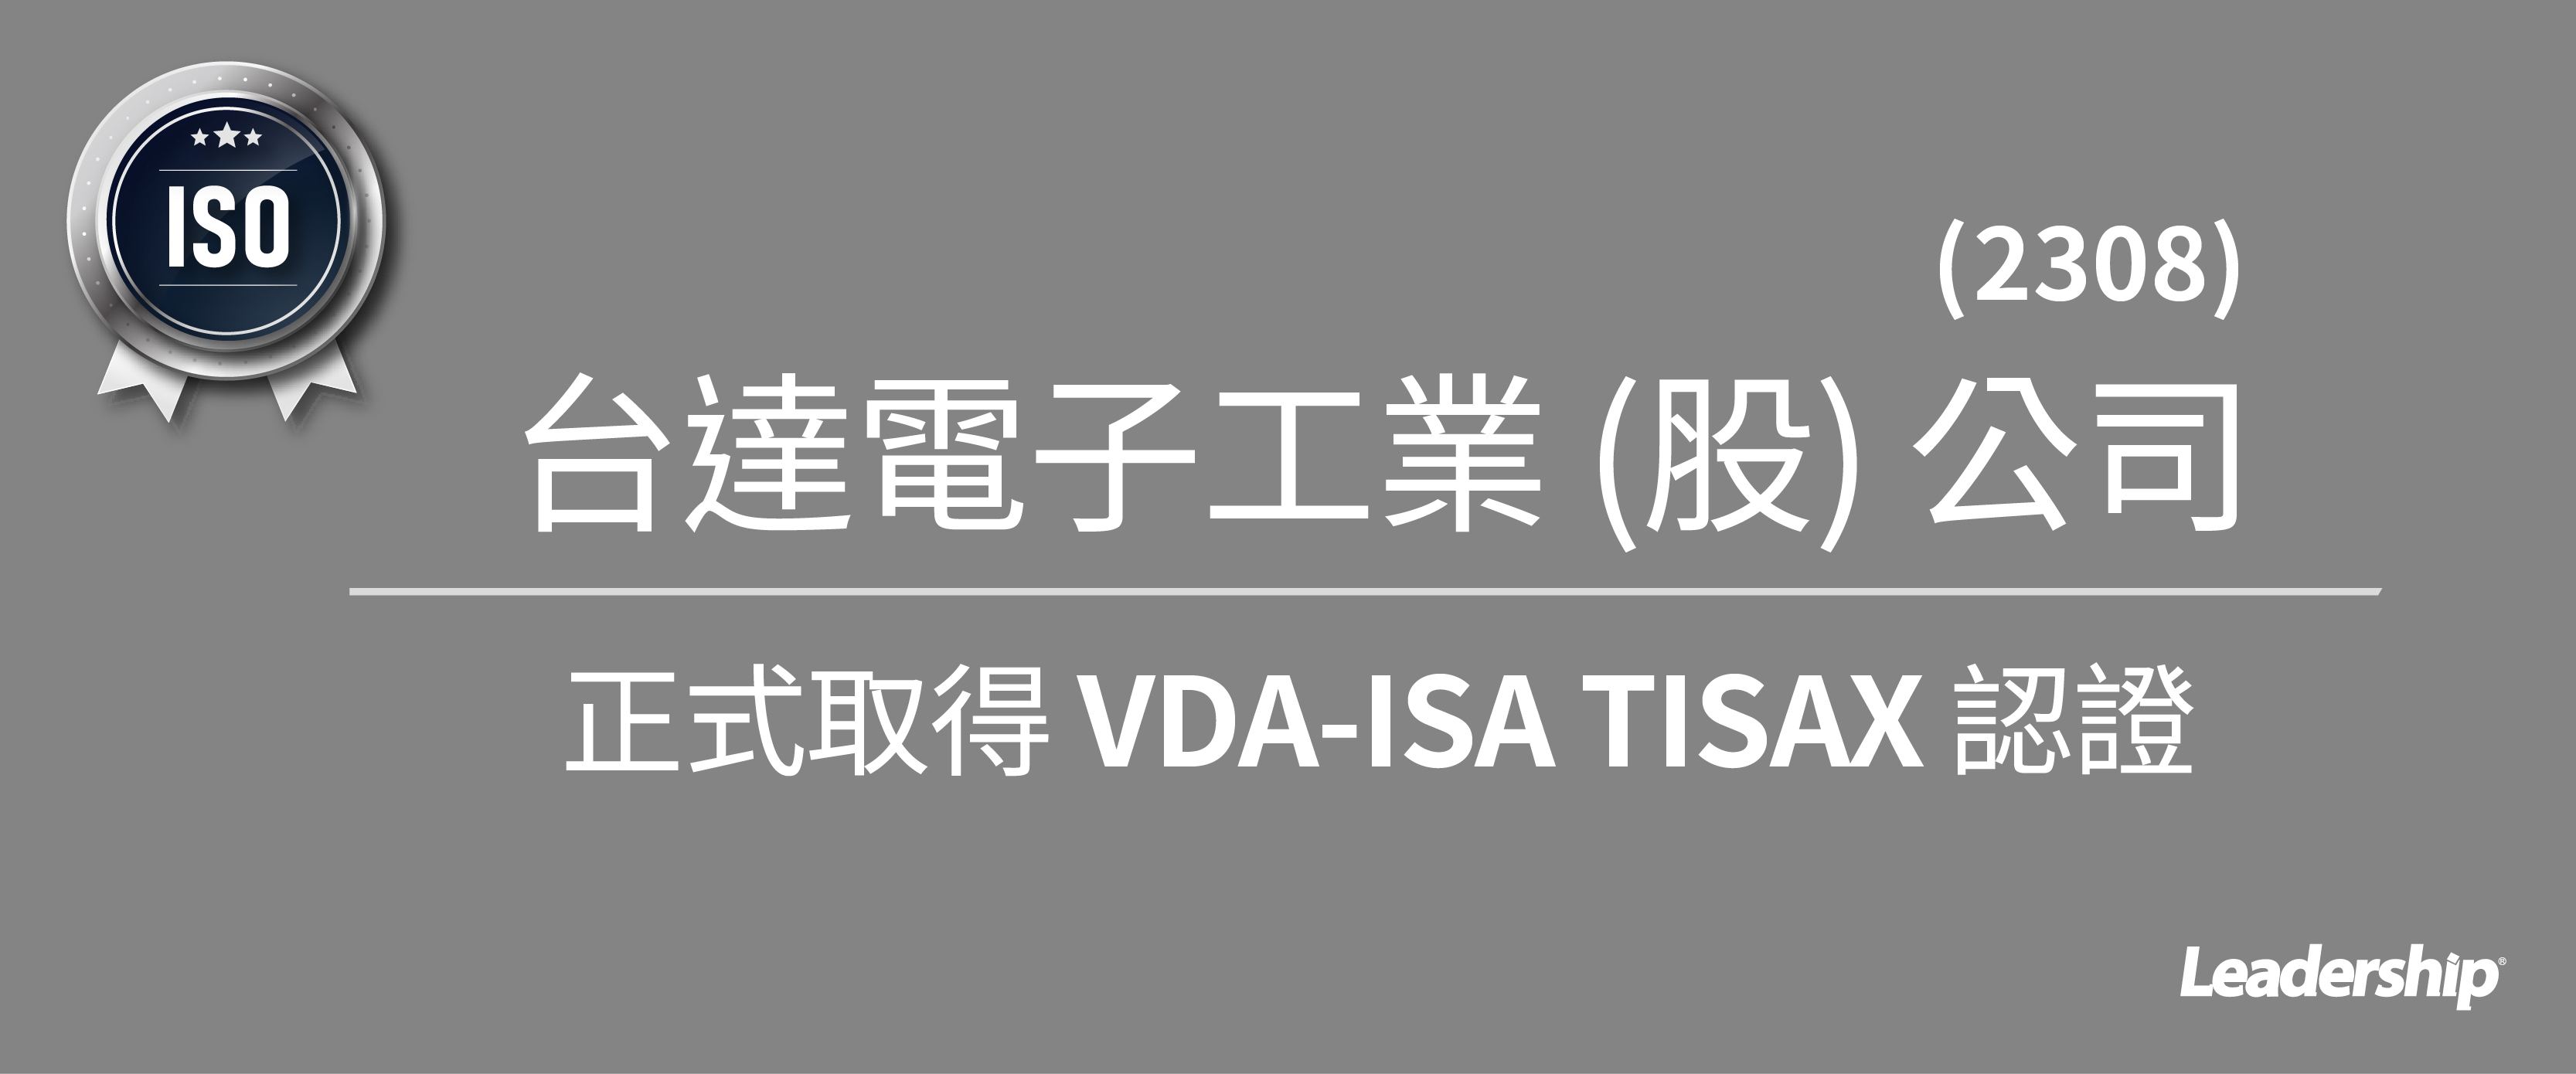 台達電子 (股) 公司 (2308) 正式取得 TISAX 認證